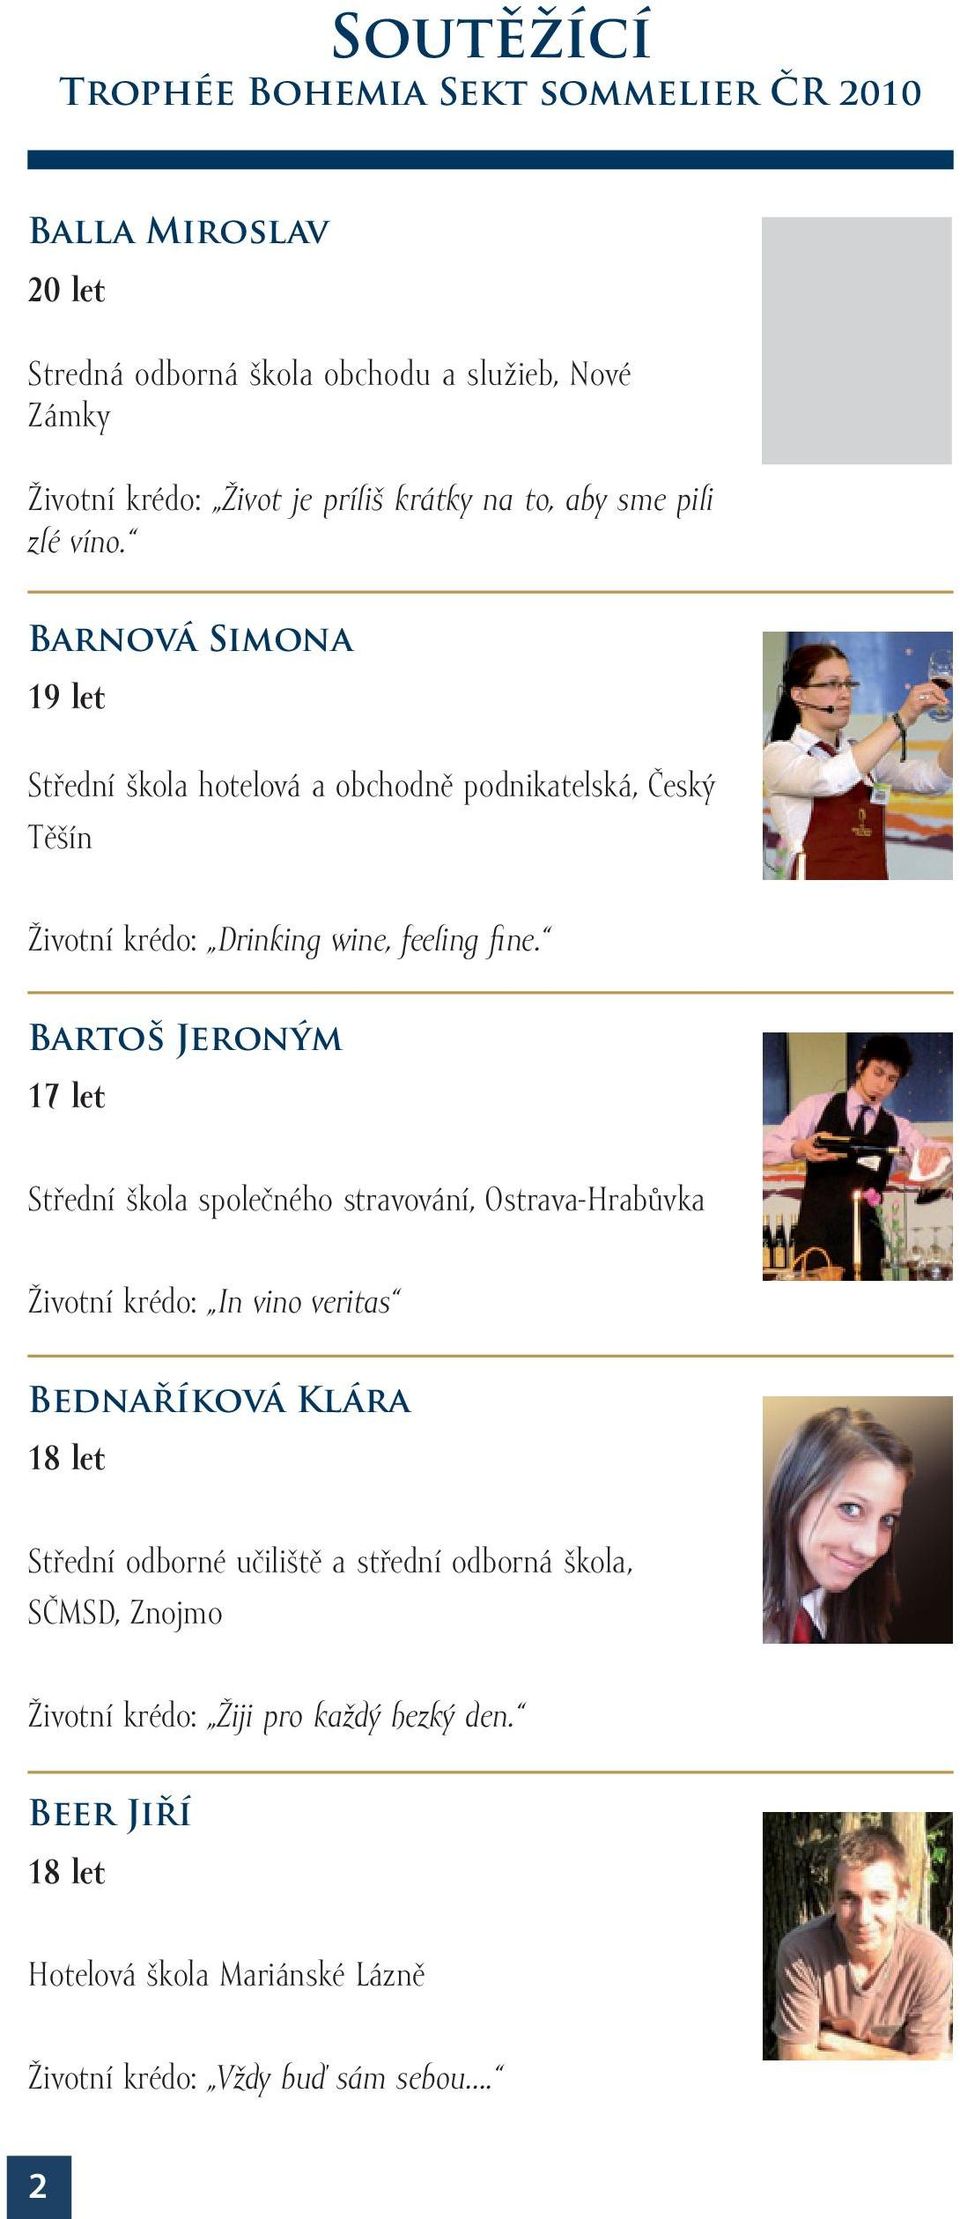 Barnová Simona 19 let Střední škola hotelová a obchodně podnikatelská, Český Těšín Životní krédo: Drinking wine, feeling fine.